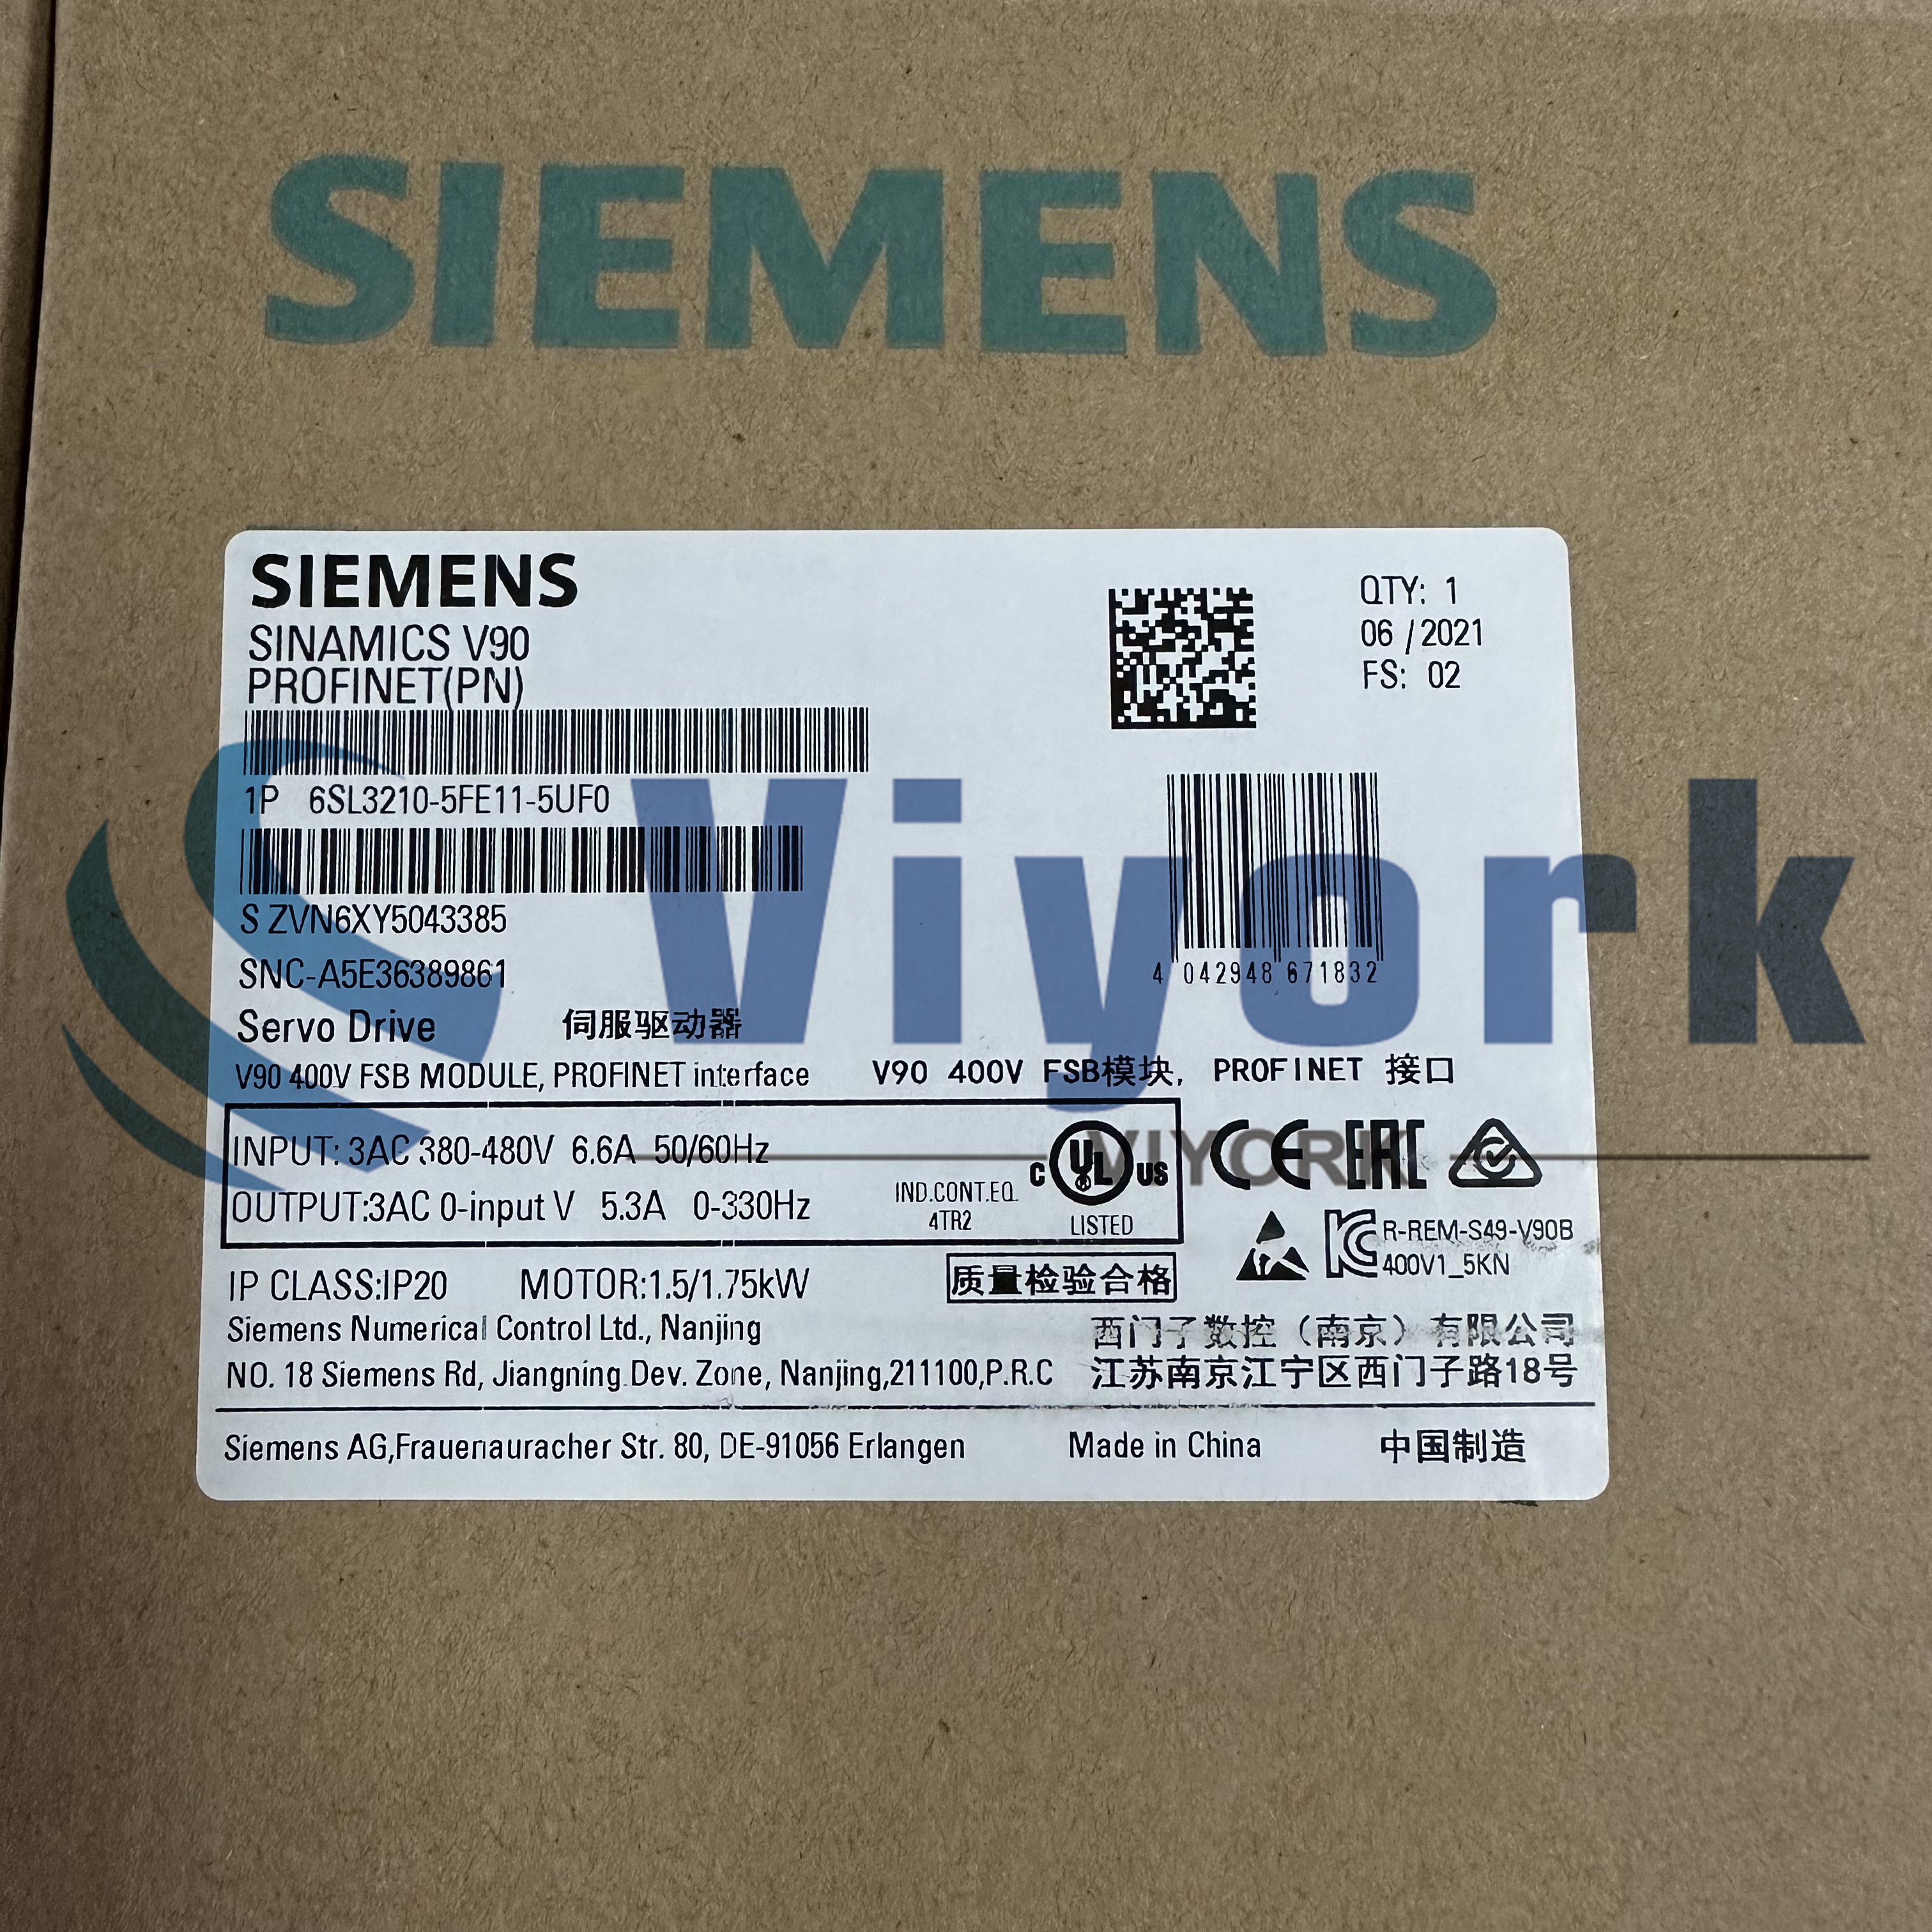 Siemens 6SL3210-5FE11-5UF0 SINAMICS V90. PROFINET. 3 AC 400V 1.5KW NEW